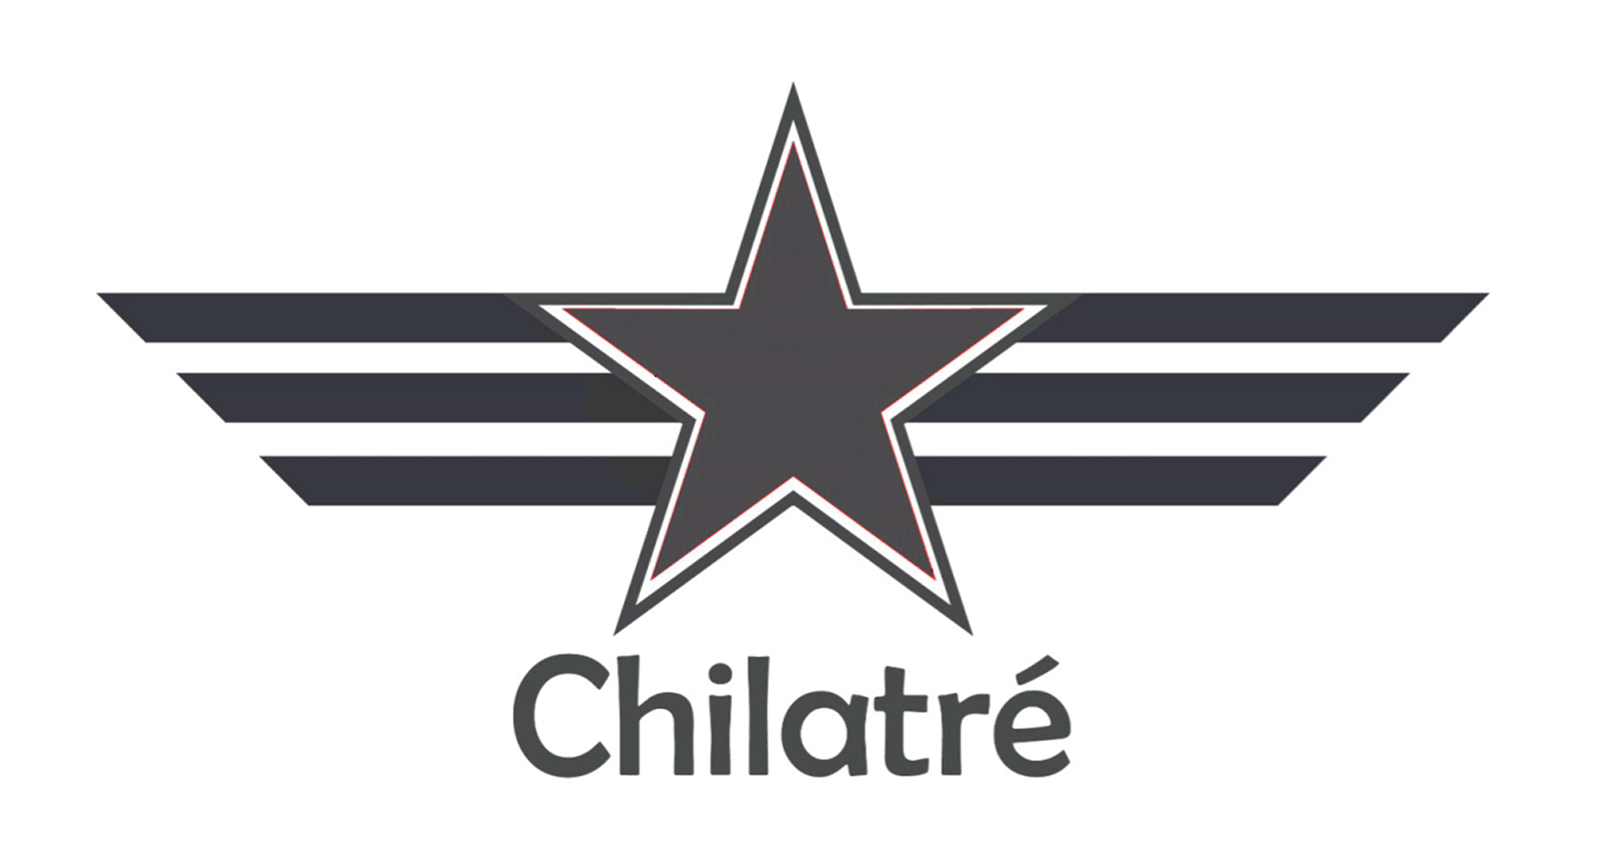 chilatre.png